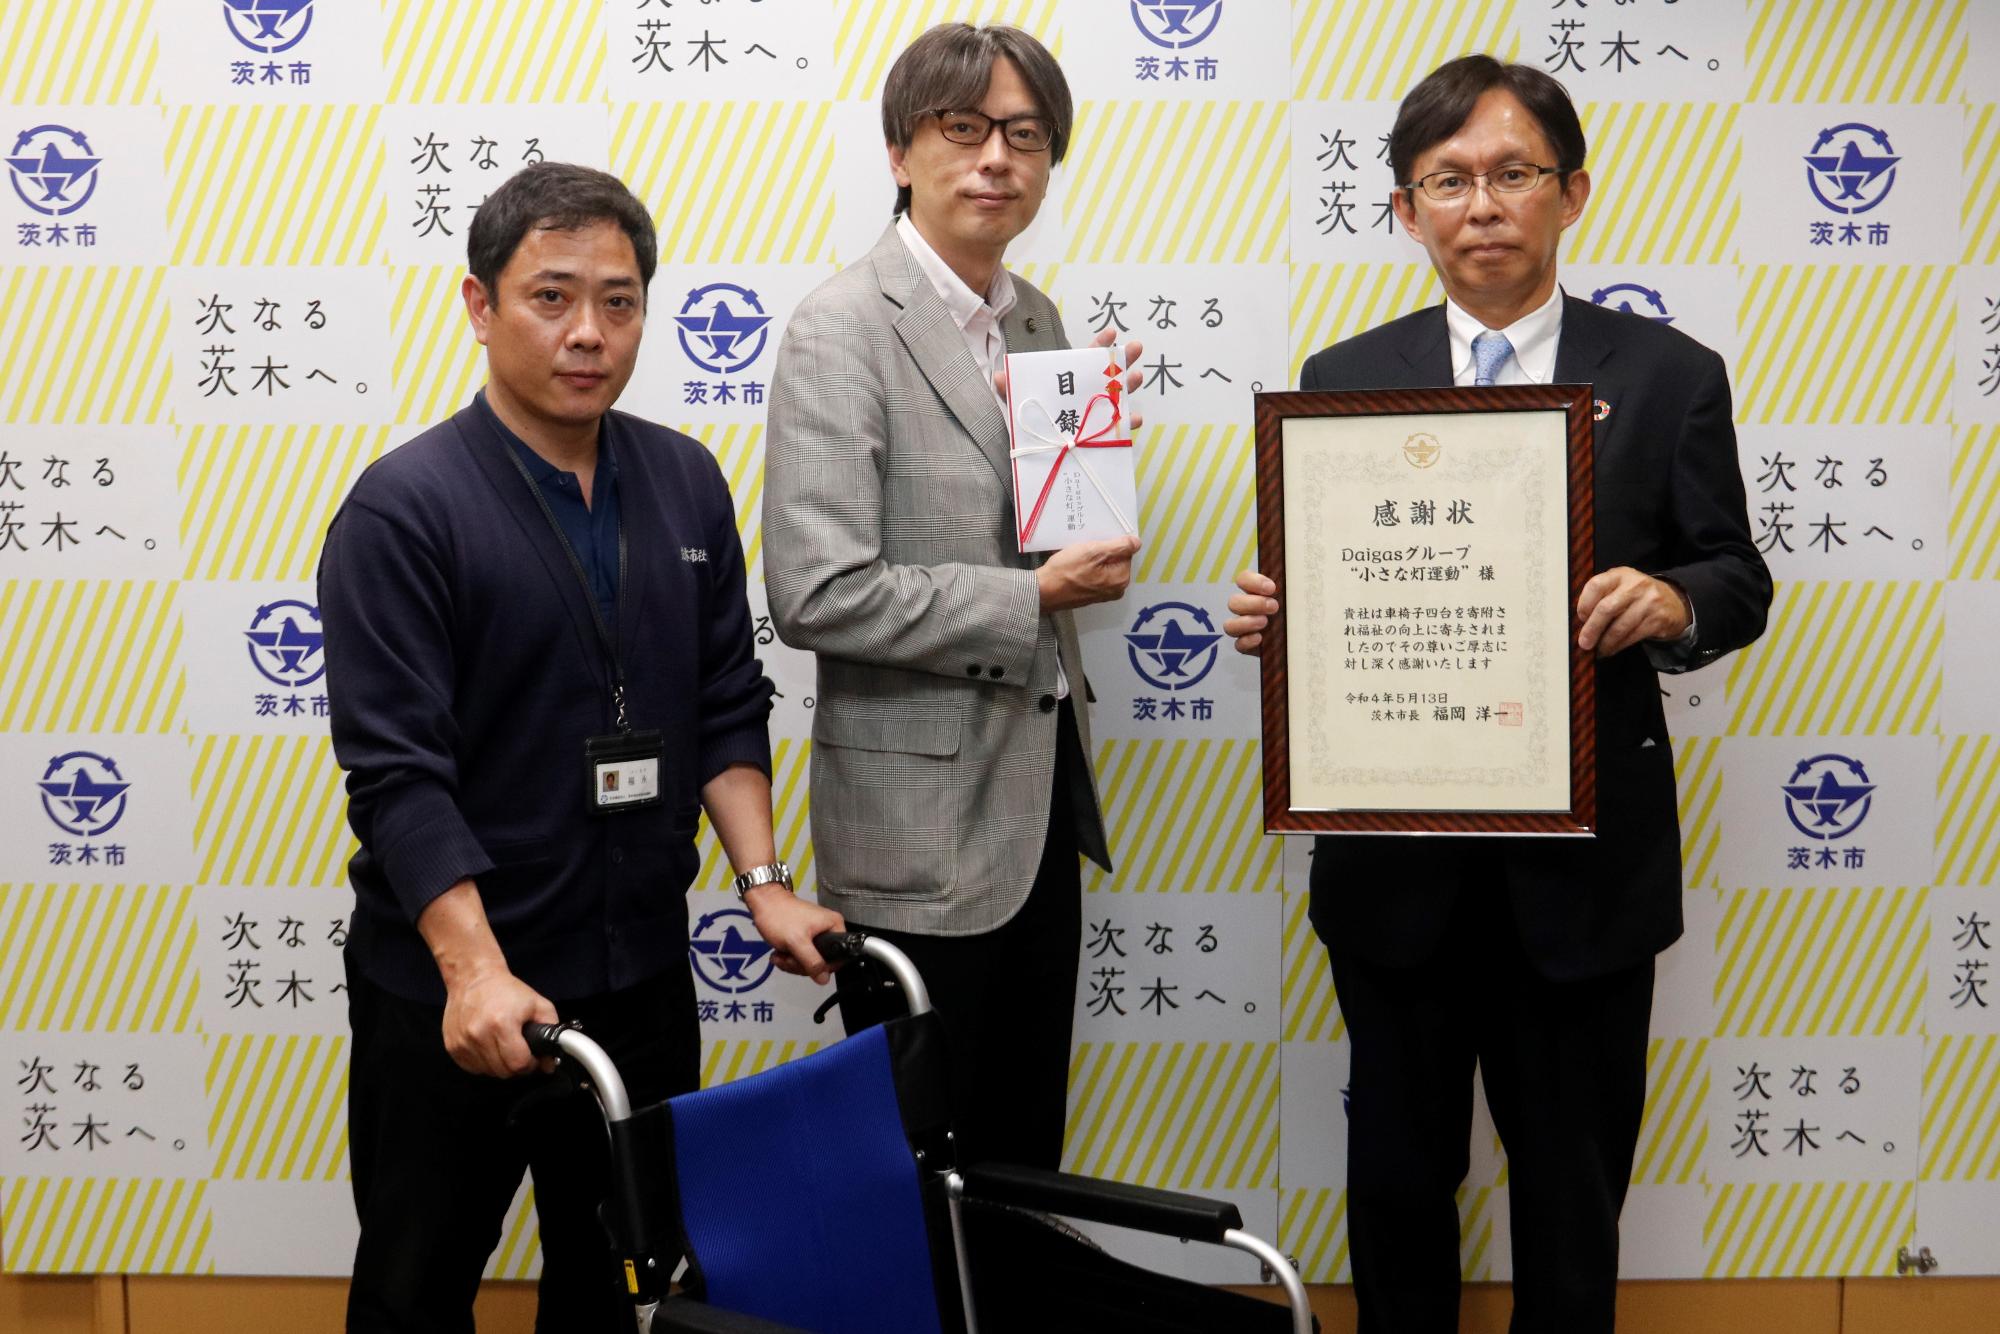 車椅子を持つ社会福祉協議会の職員と、感謝状を持つ大阪ガスネットワーク株式会社、ふくい支配人、目録を持つ市長の写真